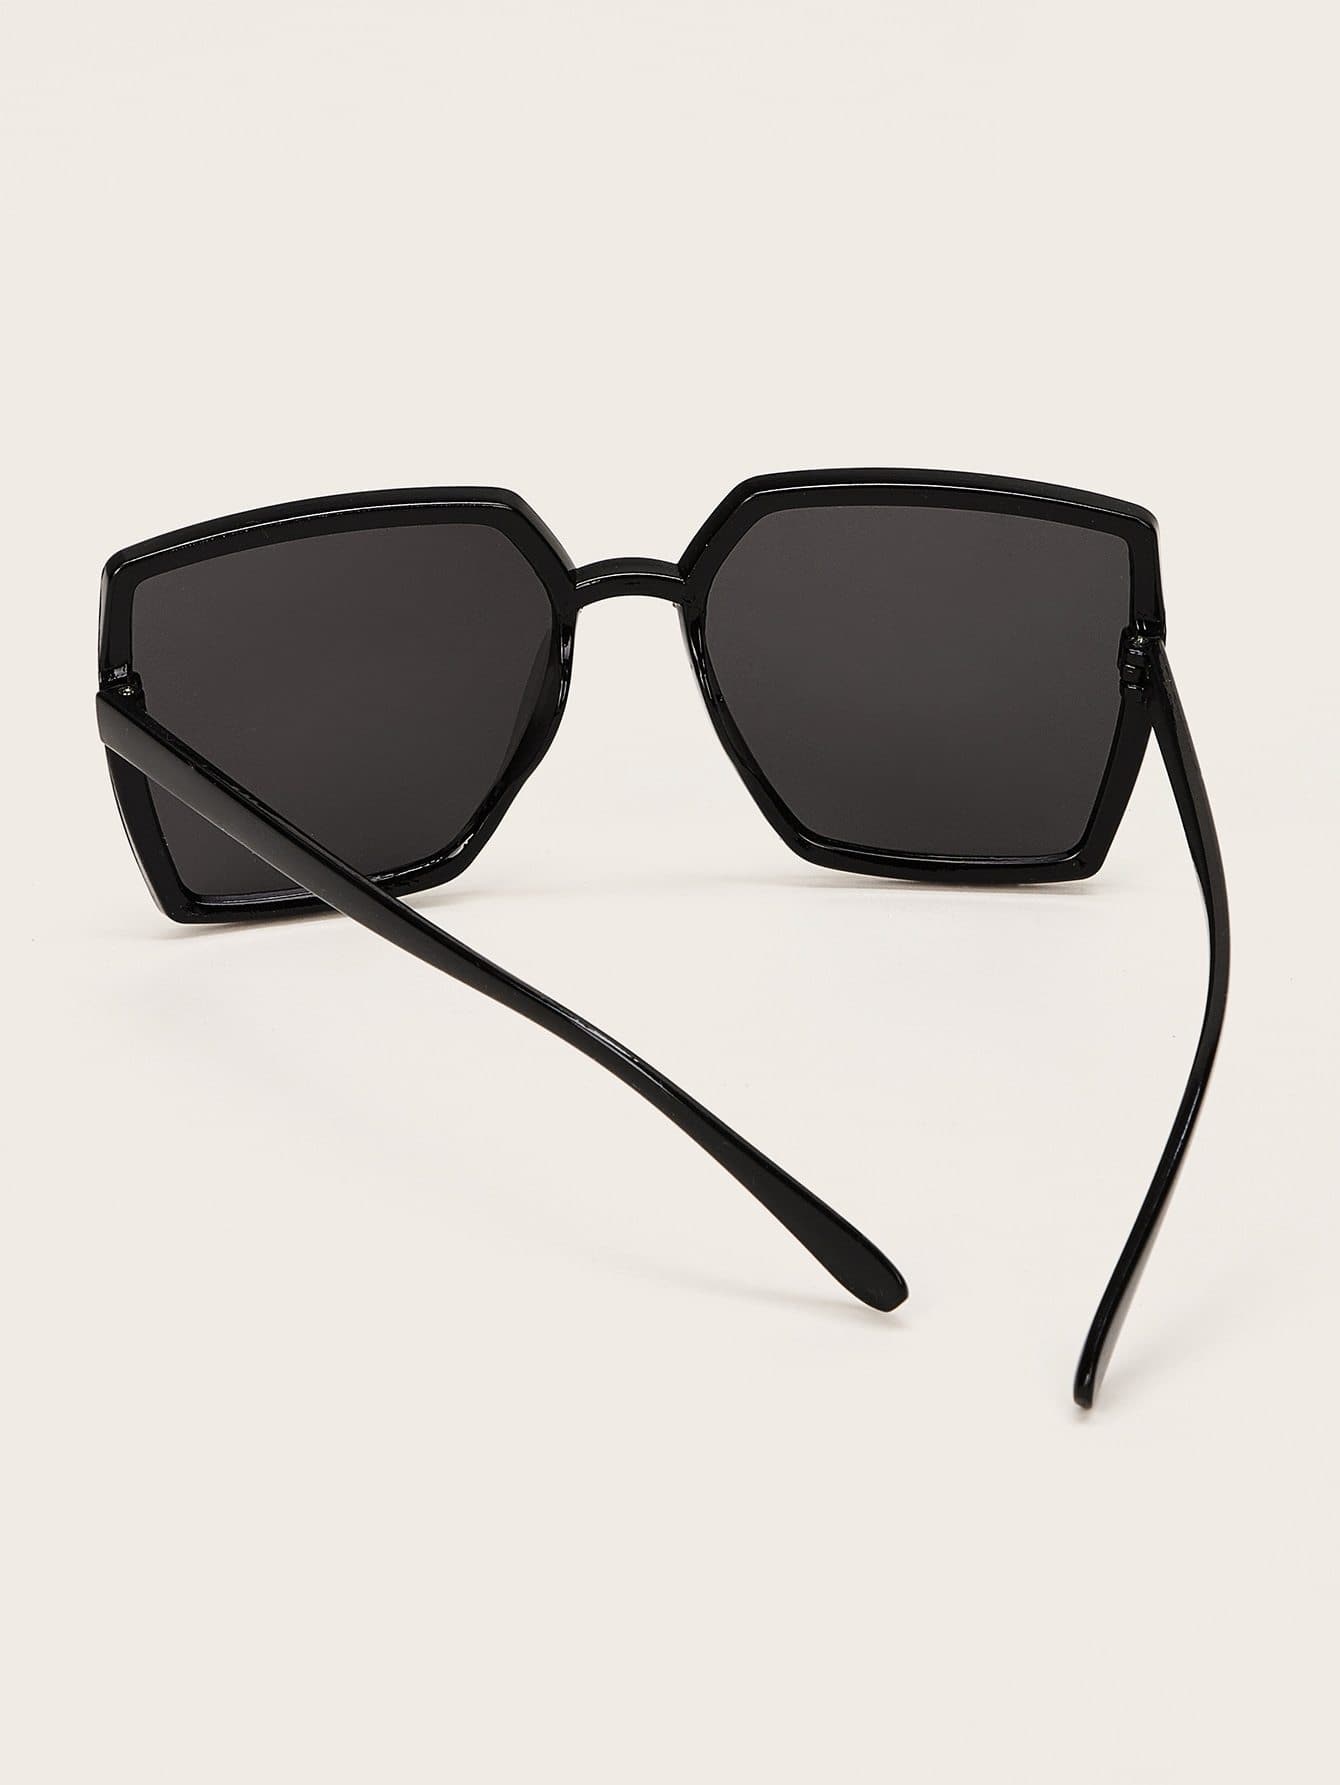 Black Plain Square Sunglasses